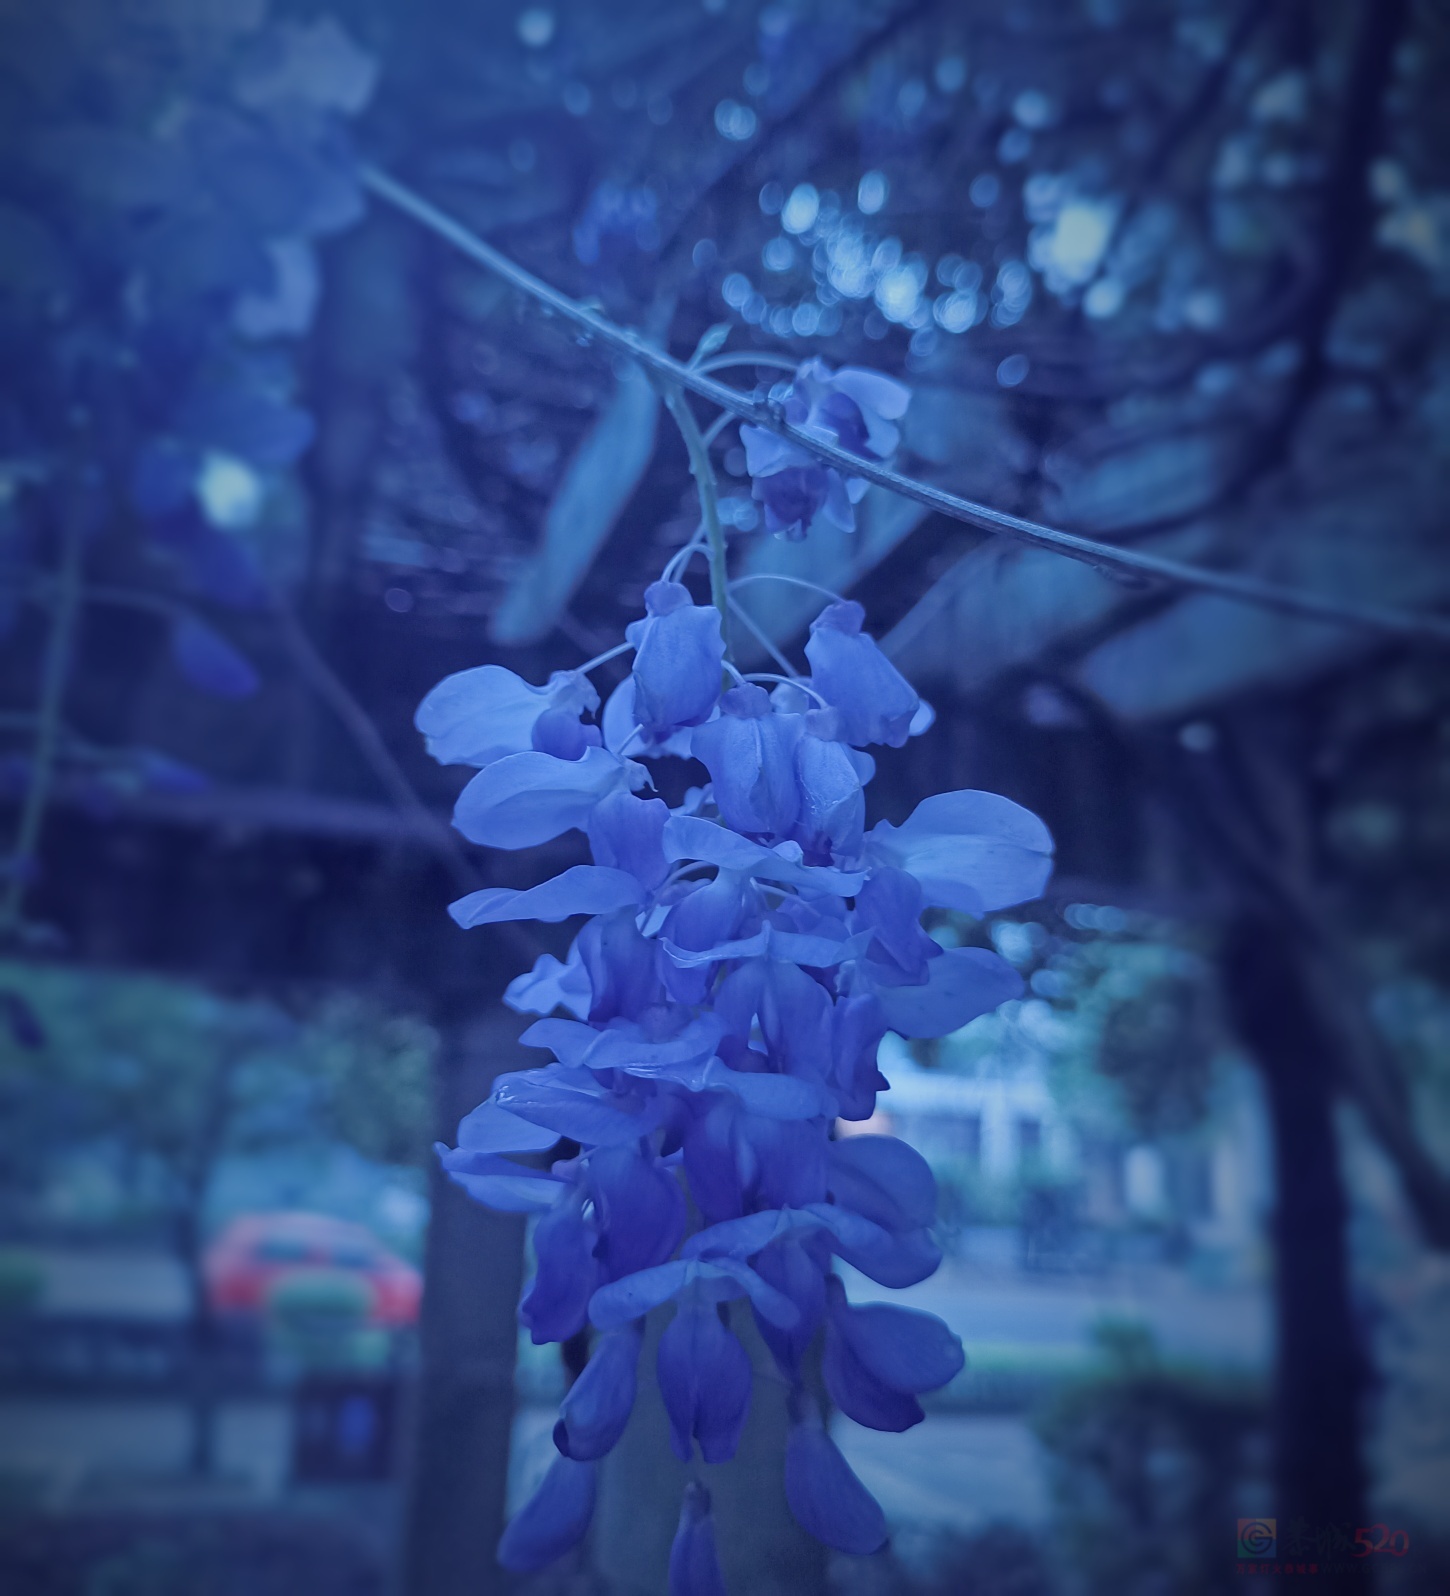 茶江河边的紫藤花盛开了。63 / 作者:风云客 / 帖子ID:305427